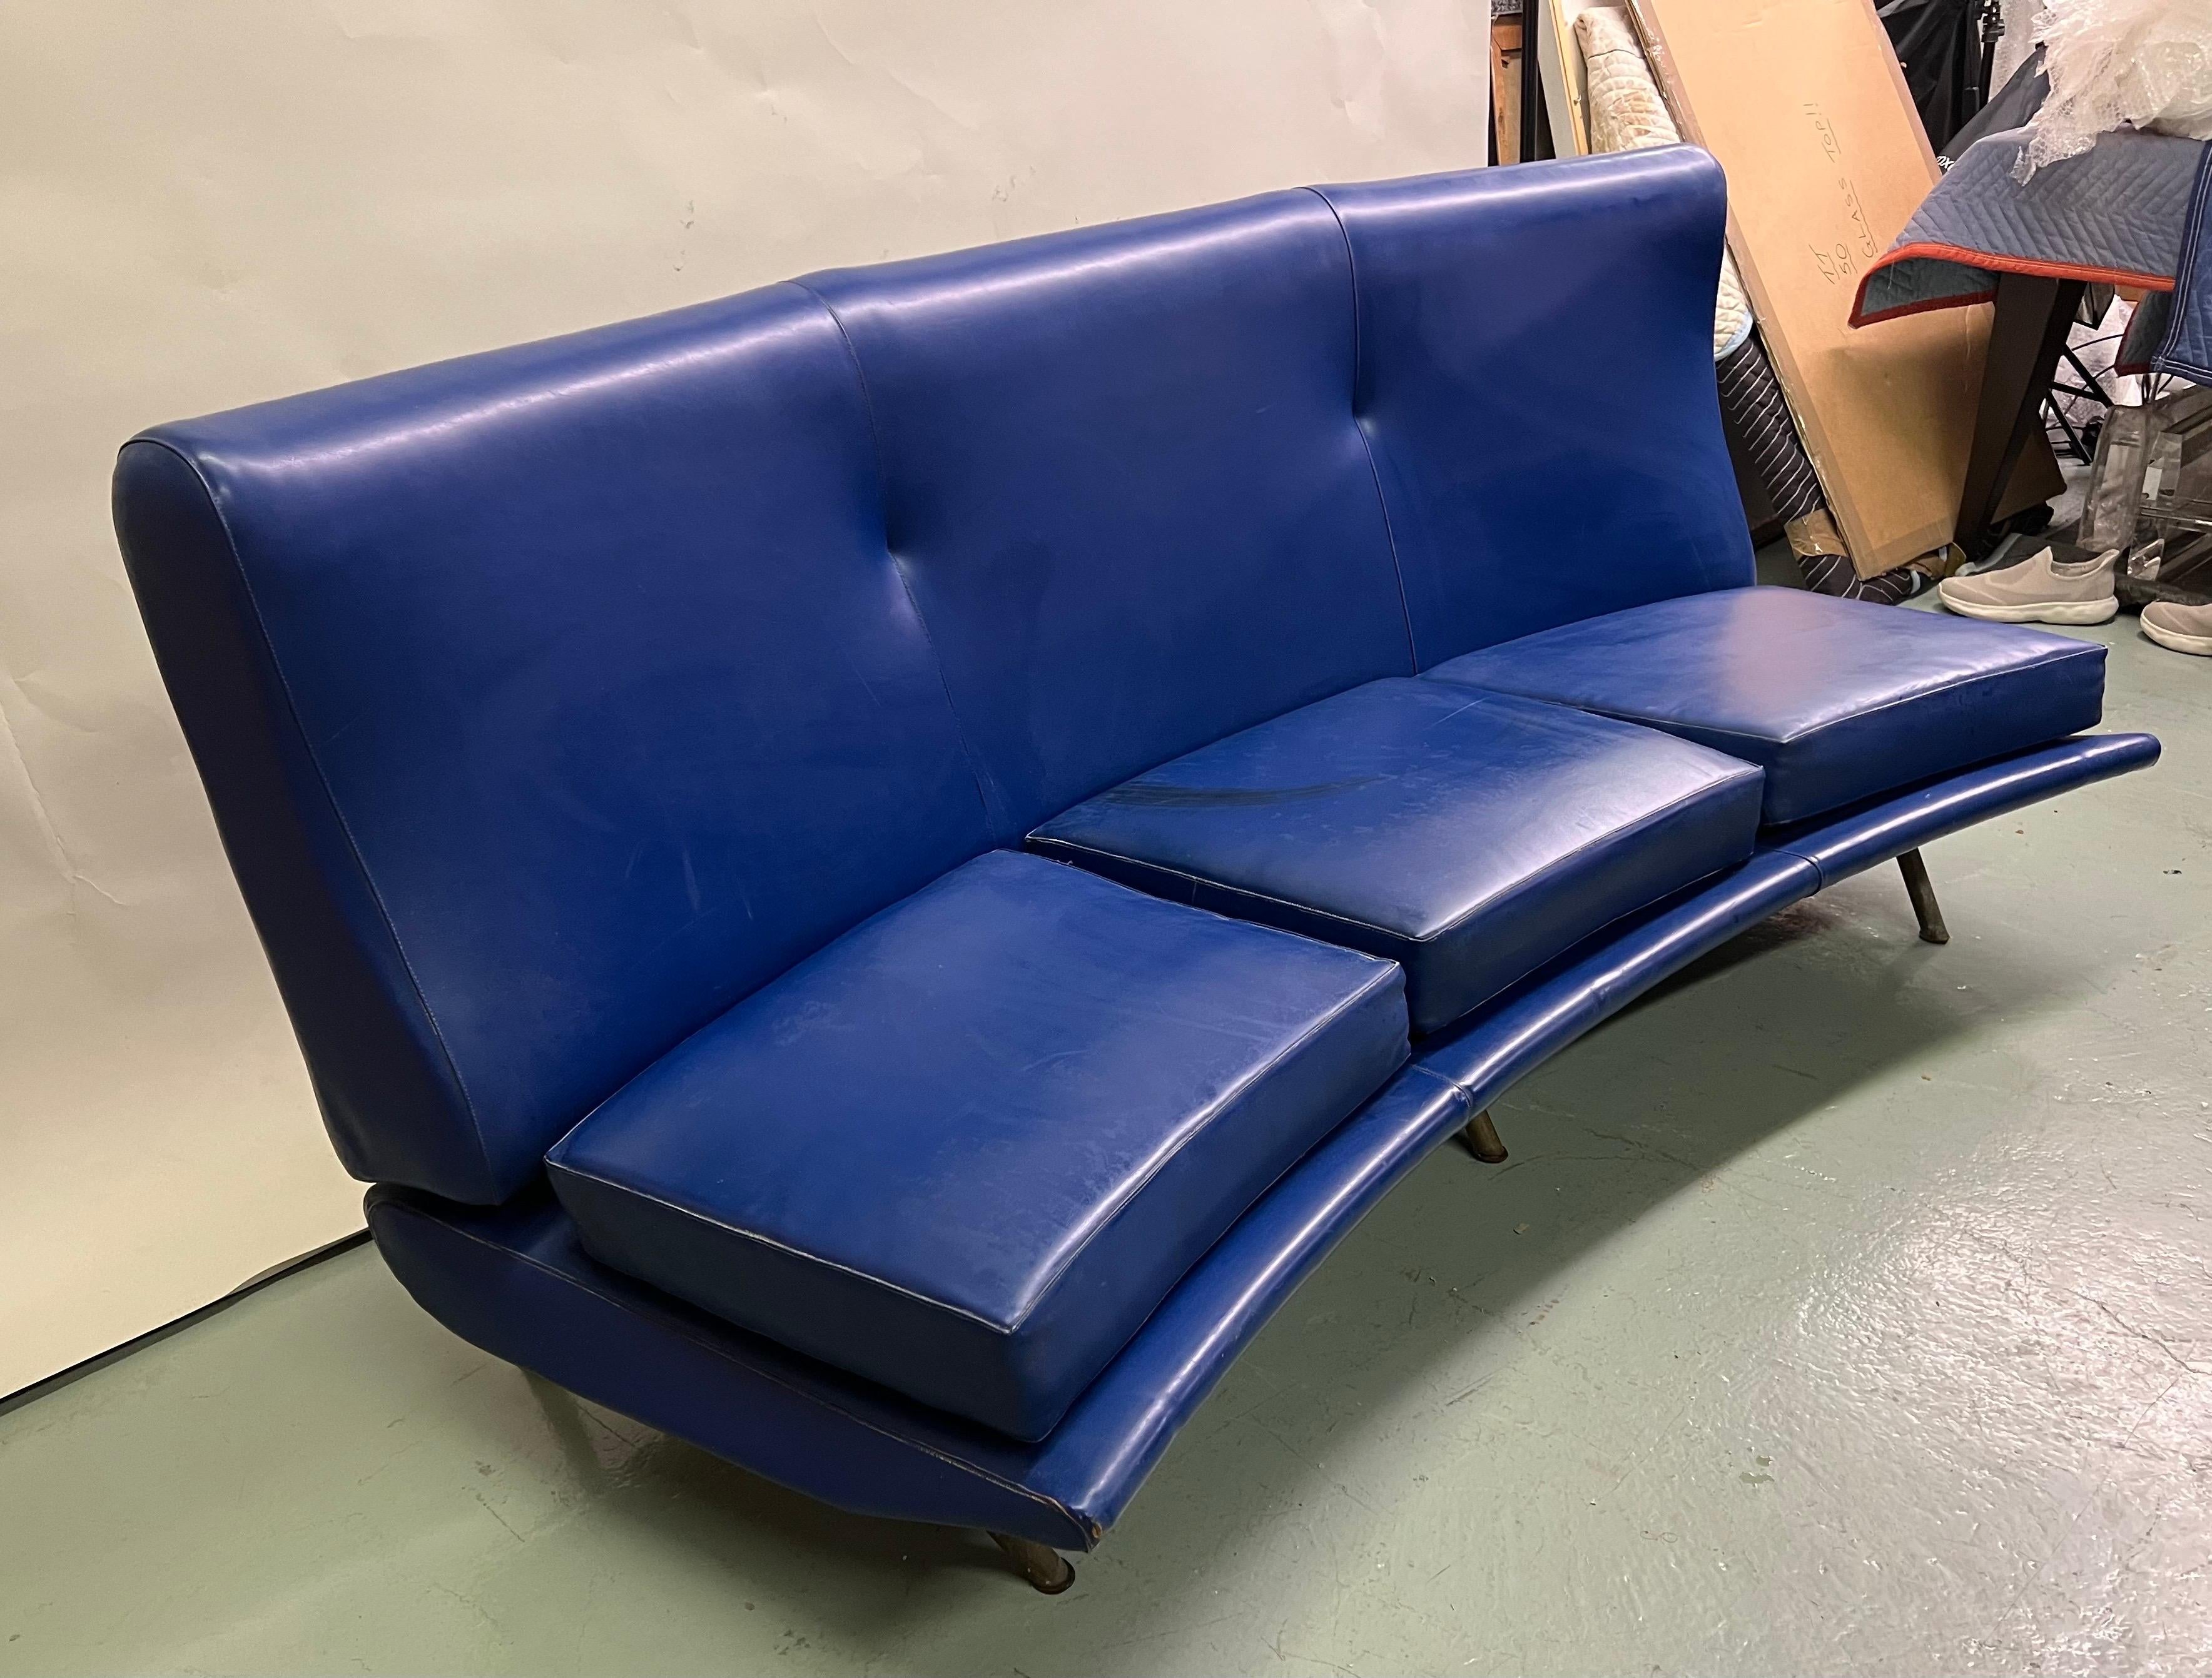 Ein seltenes und wichtiges italienisches Triennale Sofa / Diwan / Couch von Marco Zanuso für Arflex, Italien, um 1951. Das Stück ist in seiner ursprünglichen Ultra-Marine Kunstleder / Vinyl-Polsterung und verfügt über eine seltene, subtile,